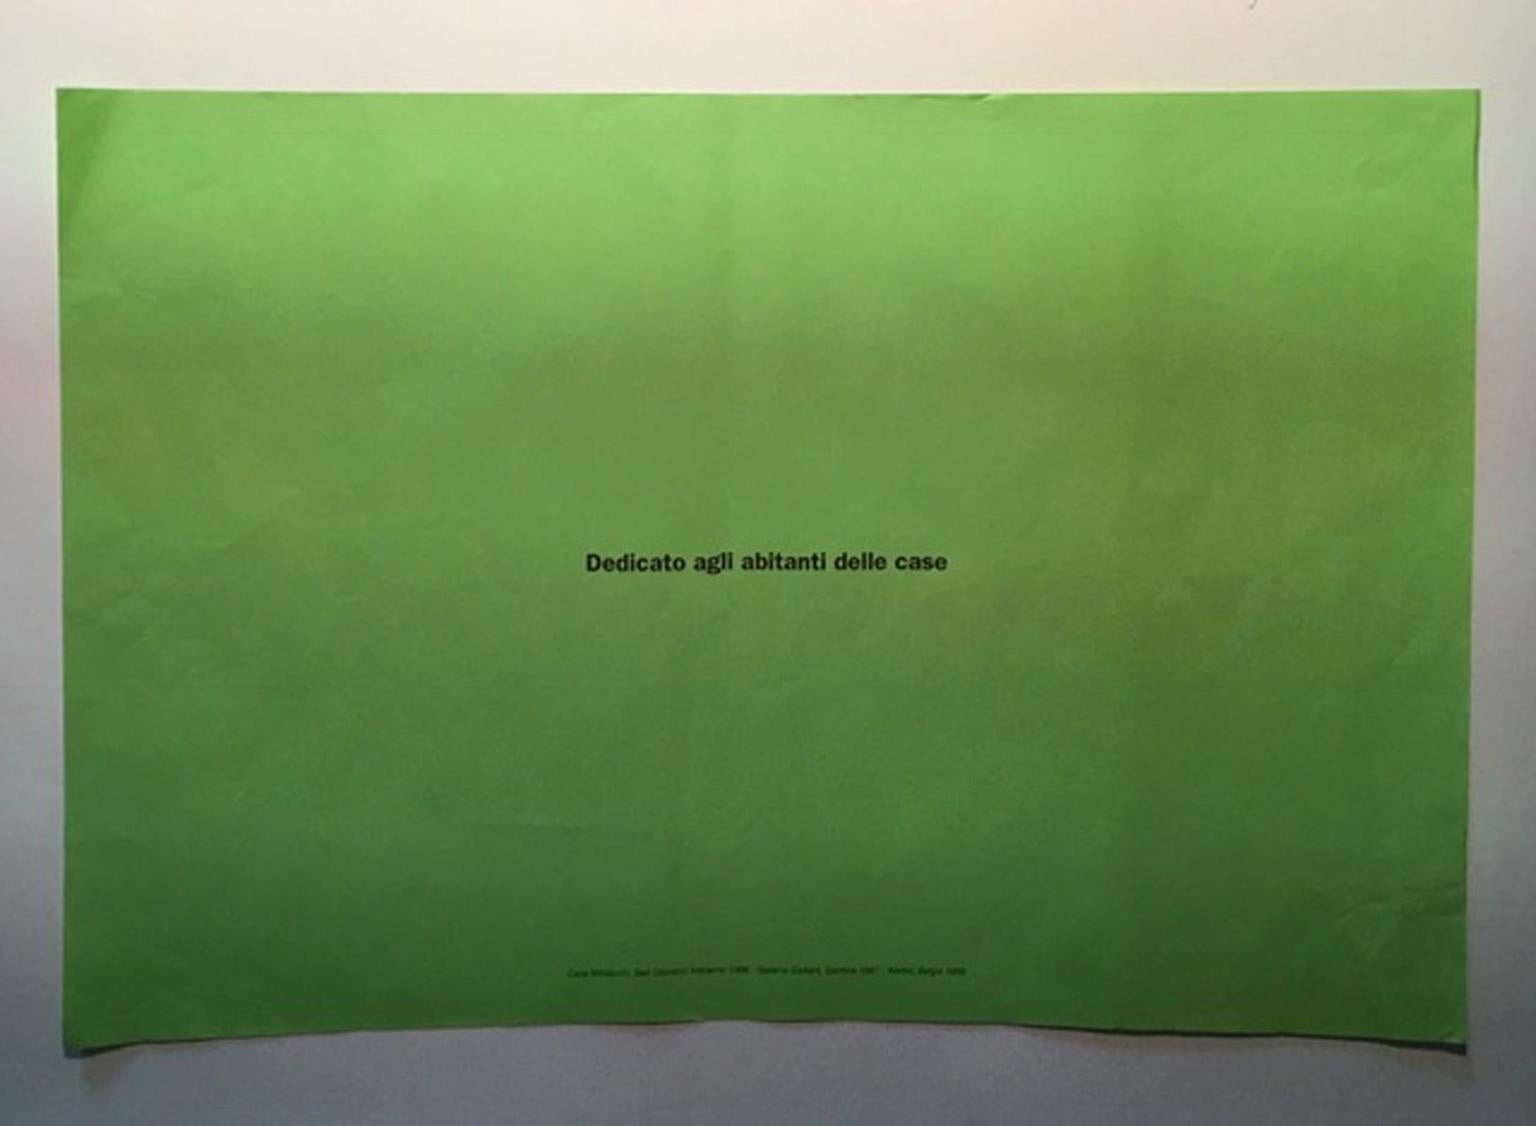 Post it Grüner, mehrfarbiger schwarzer Druck auf grünem Papier 2013 Triennale Milano Italien